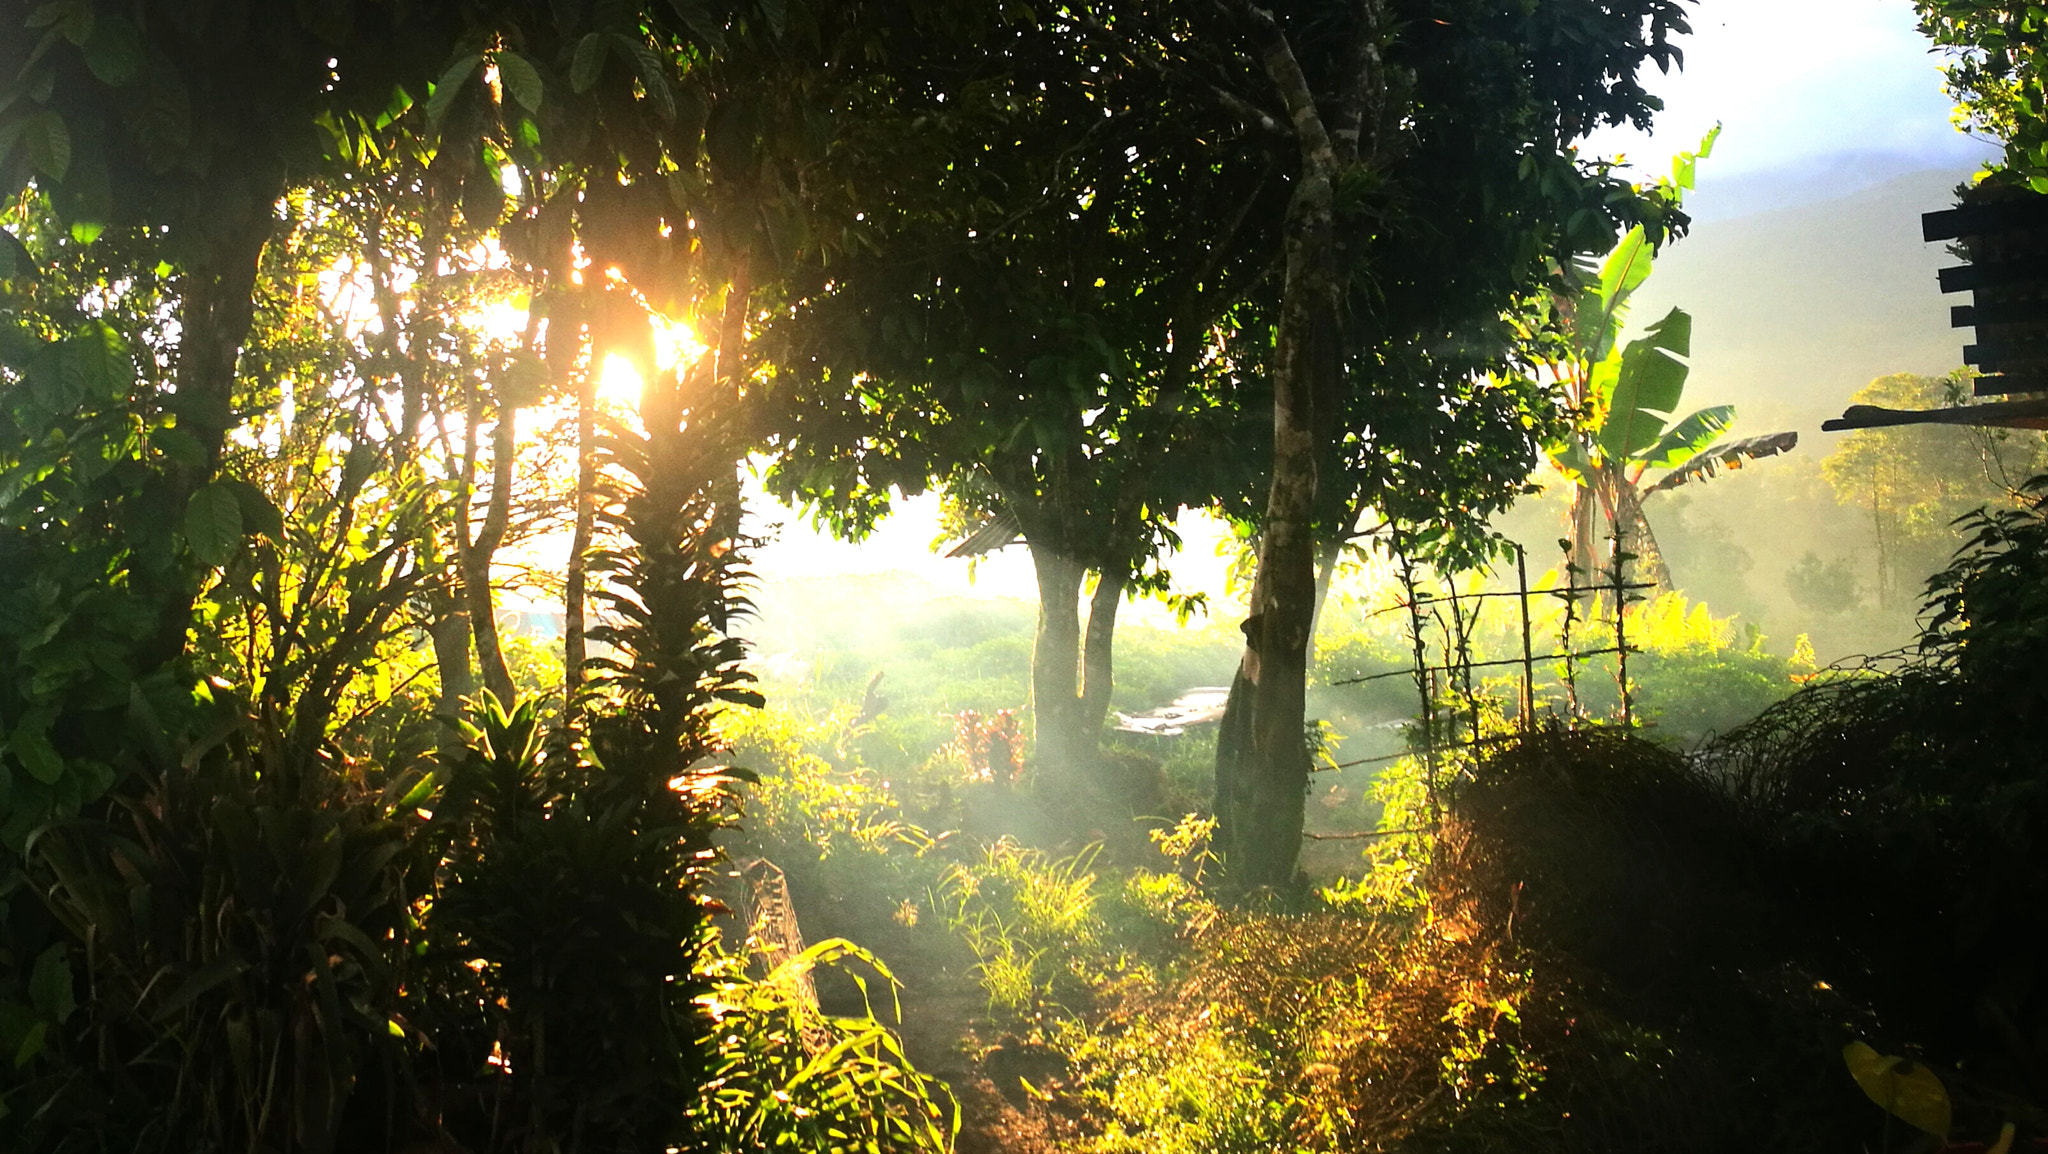 HUAWEI P9 Plus sample photo. Garden paradise sunrise photography